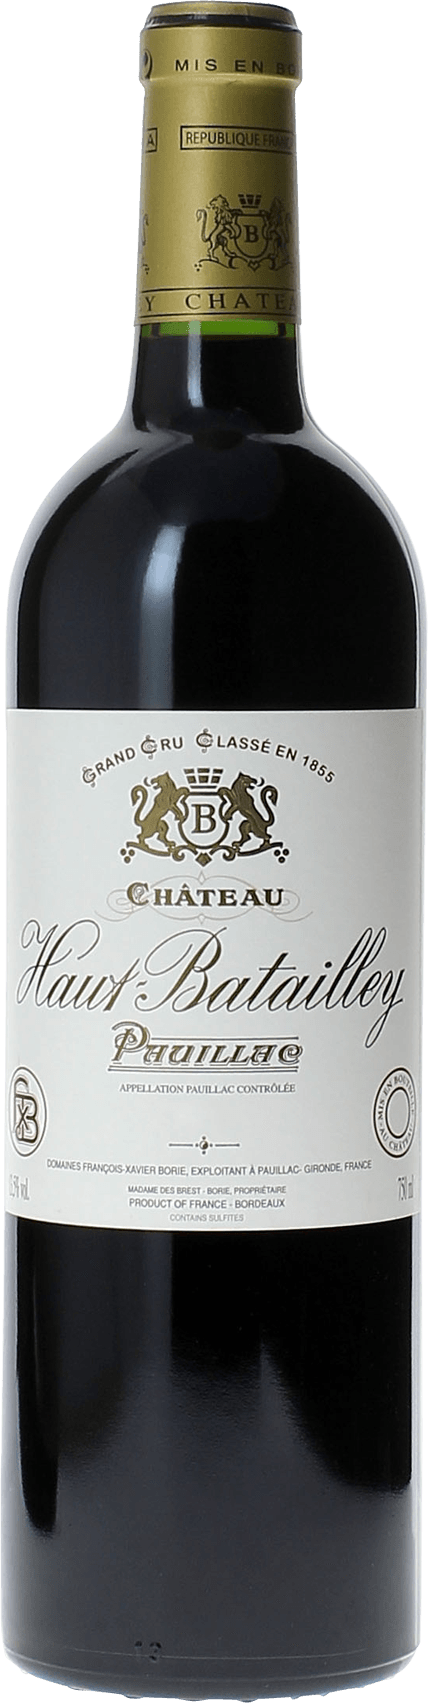 Haut batailley 1996 5 me Grand cru class Pauillac, Bordeaux rouge